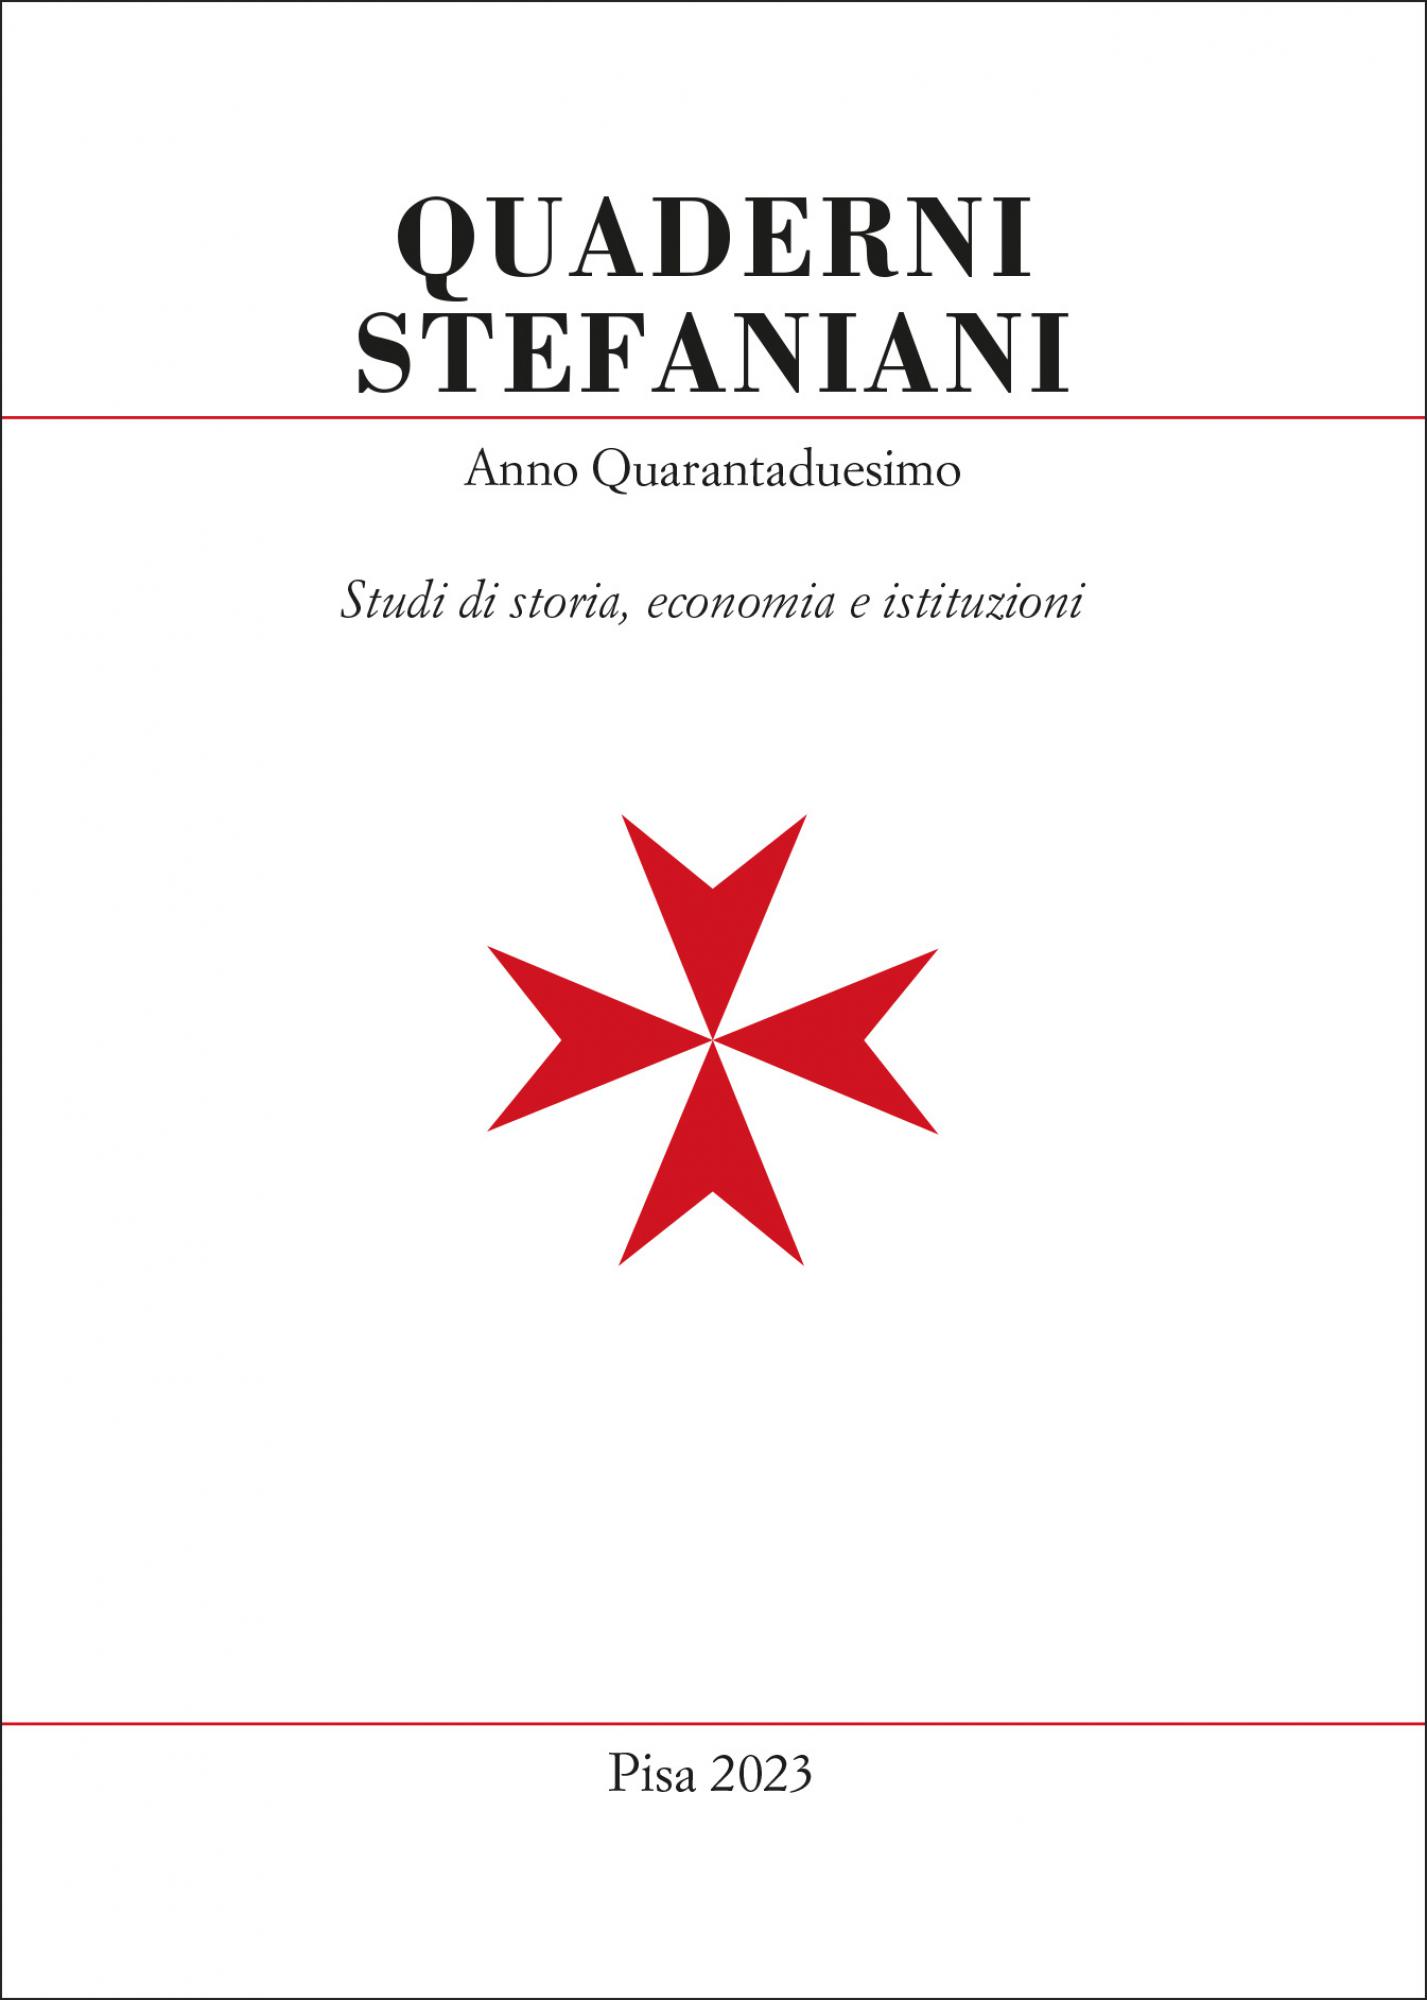 Quaderni stefaniani, anno quarantaduesimo.Studi di storia, economia e istituzioni